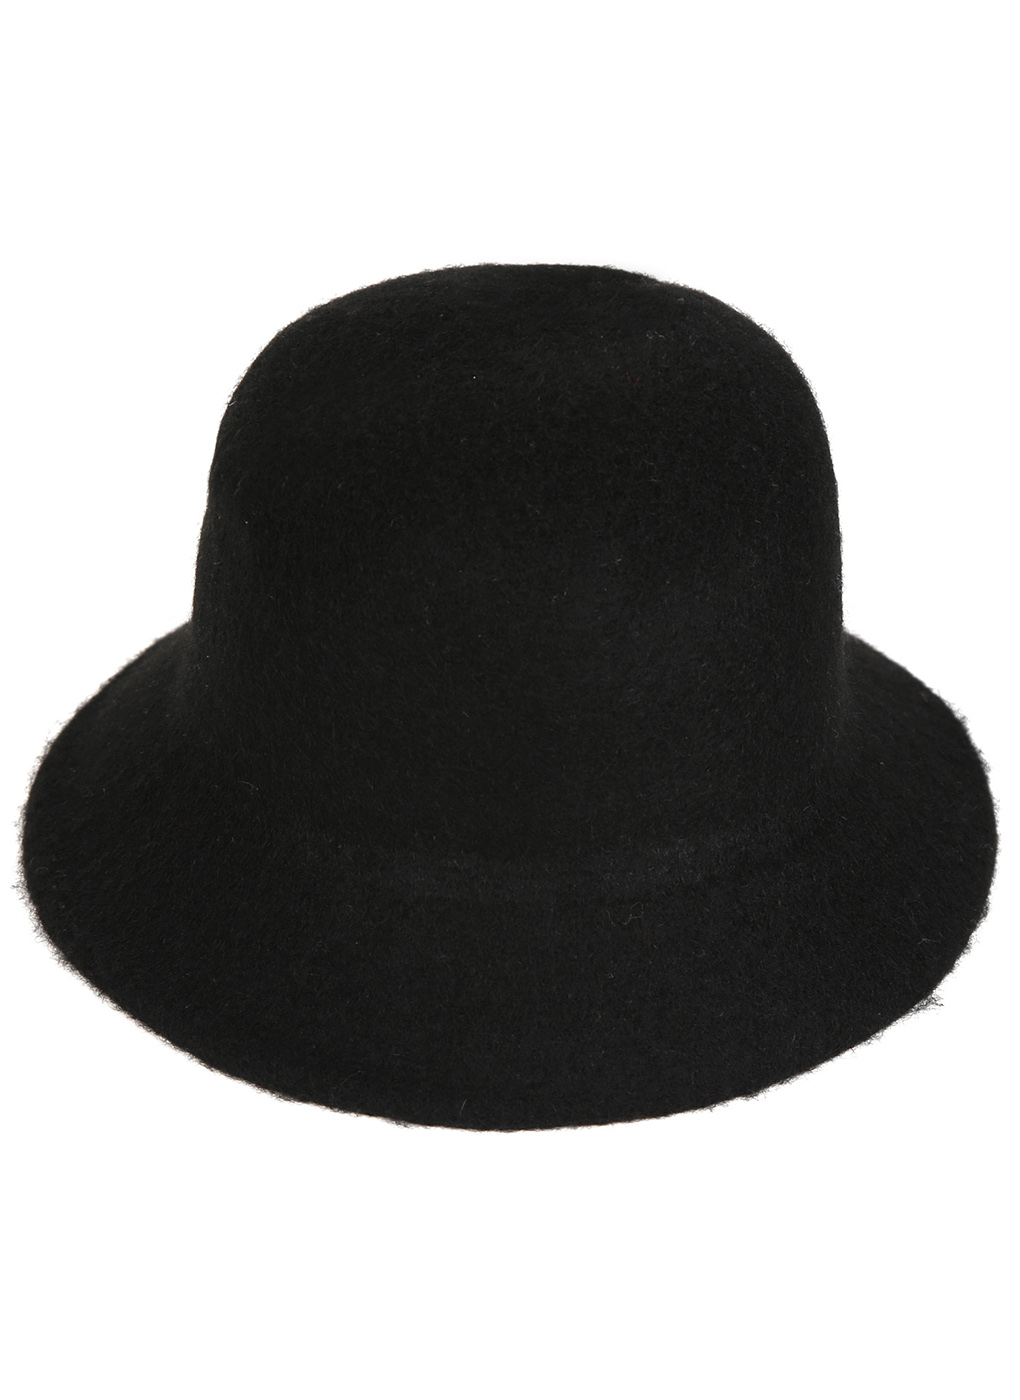 Шляпа женская Каляев 56000 черная, р. 57